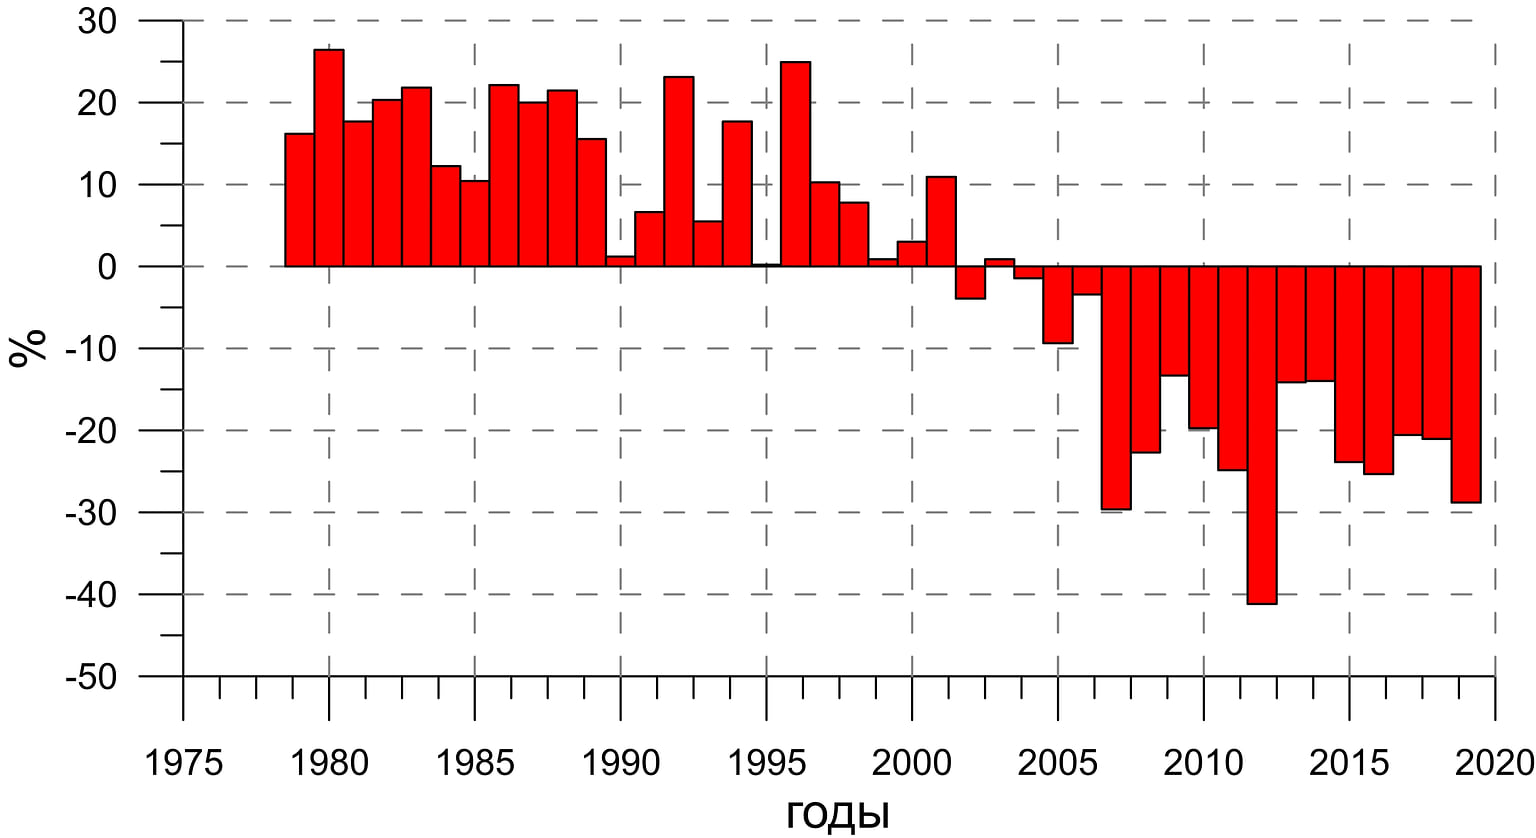 Аномалия распространения арктического морского льда в сентябре (%) относительно средней за период спутниковых наблюдений (1979–2020 г.)